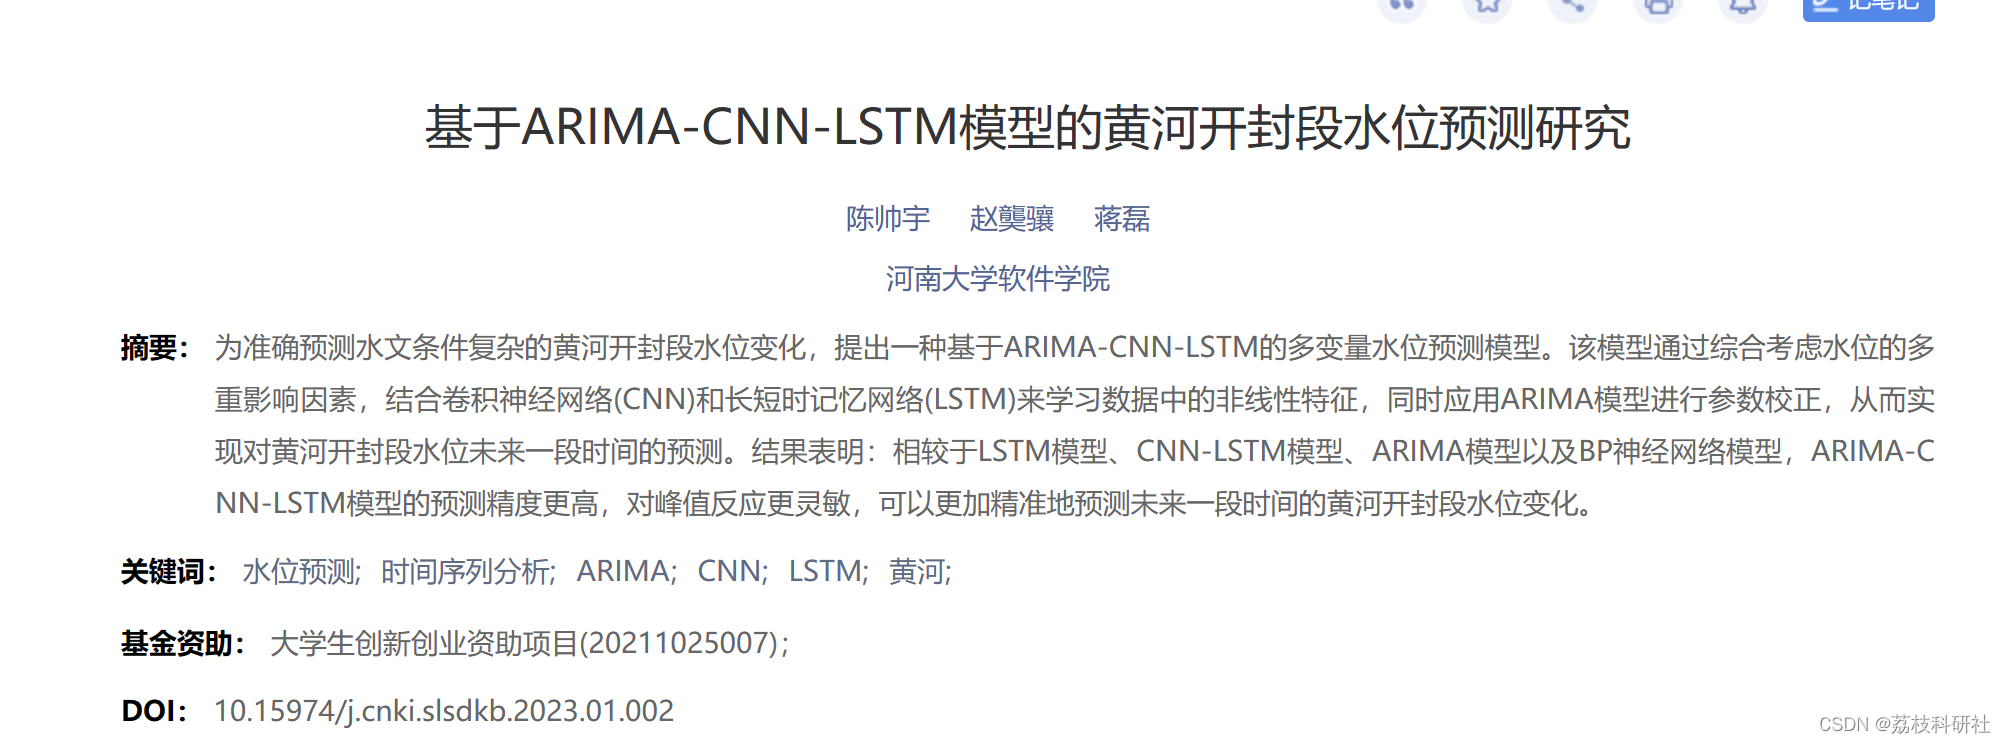 基于ARIMA-CNN-LSTM预测模型研究（Python代码实现）